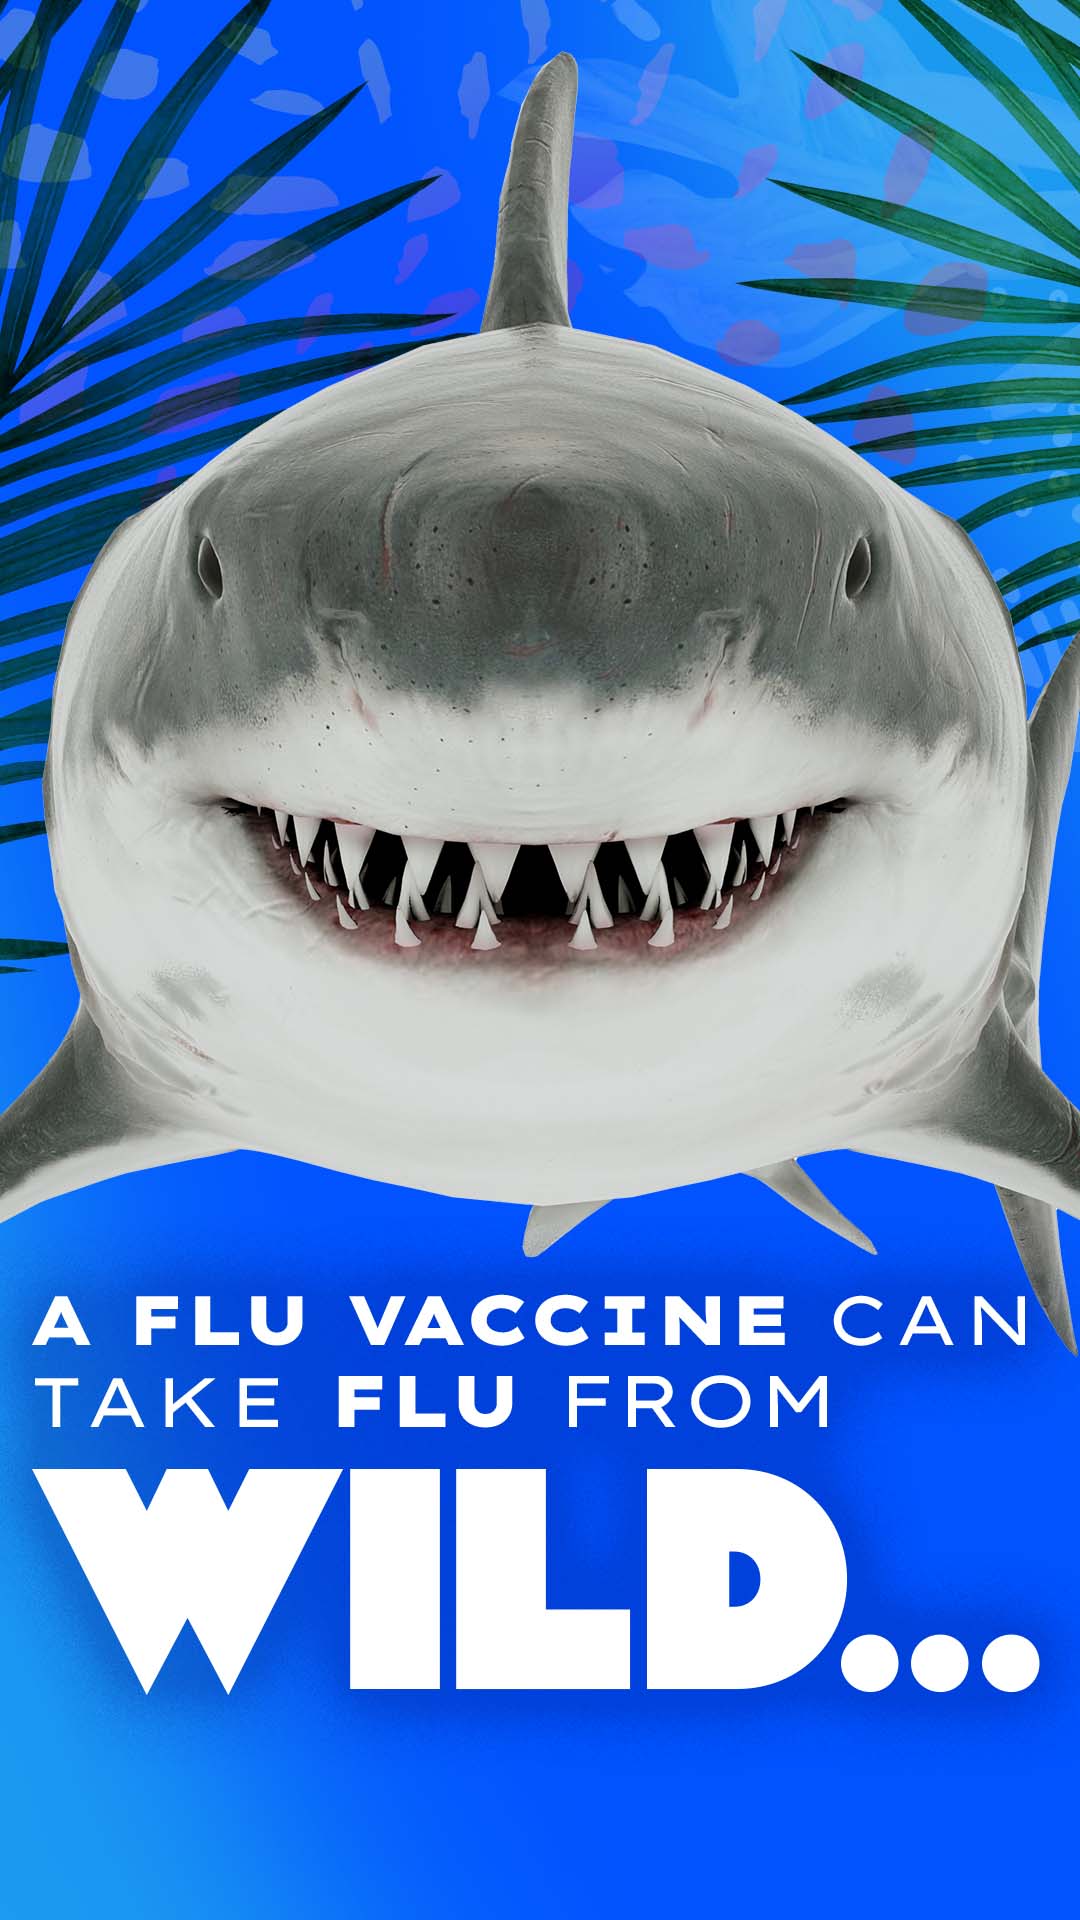 A flu vaccine can take flu from wild